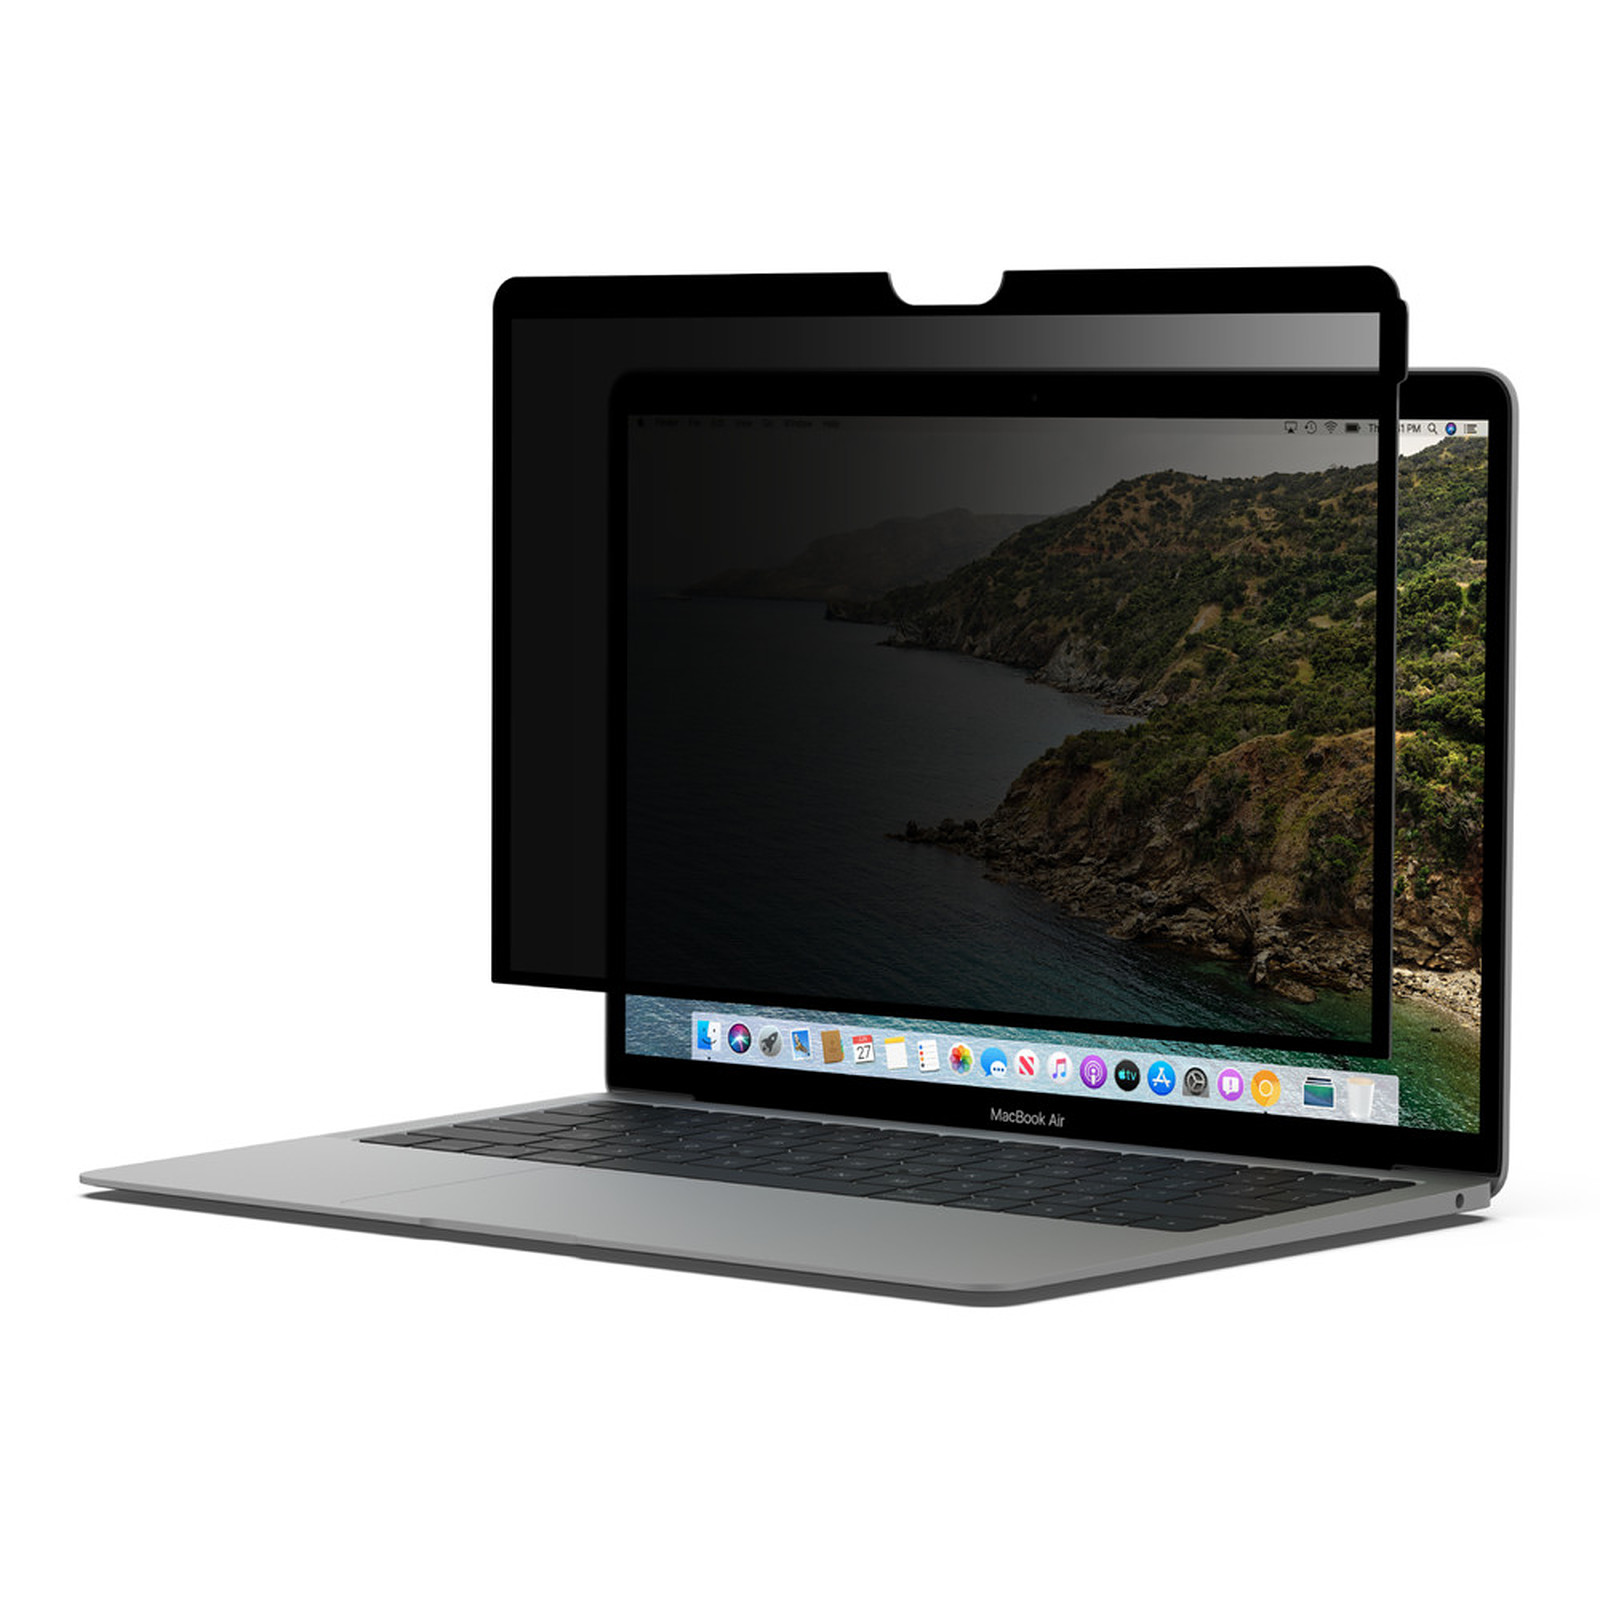 Belkin Ecran de protection/confidentialite pour MacBook Pro/Air 13" amovible et reutilisable - Accessoires PC portable Belkin